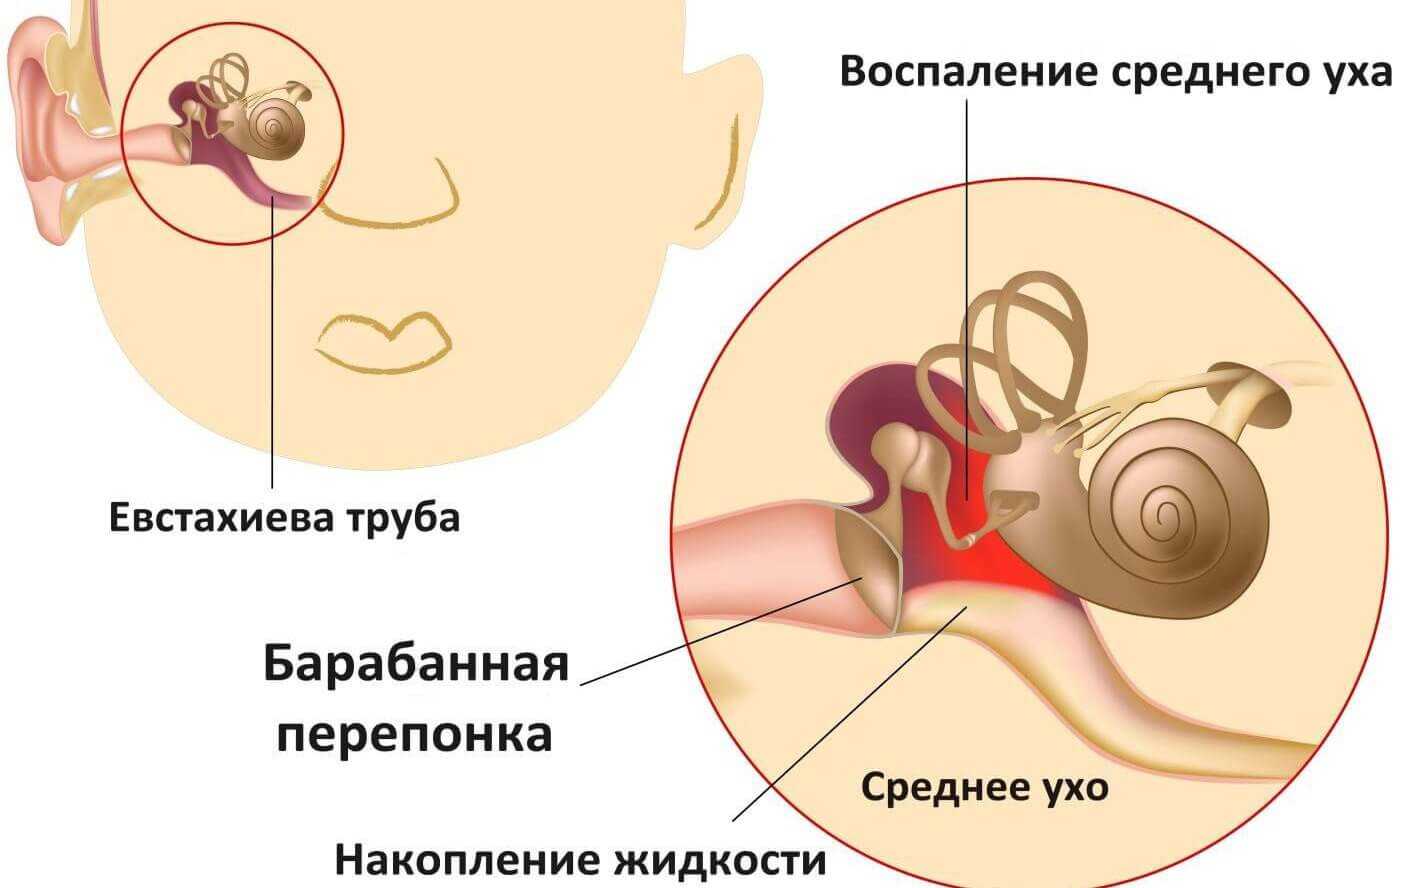 Болит ухо у взрослого причины. Средний отит барабанная перепонка. Воспаление среднего уха. Восполениеисреднего уха.